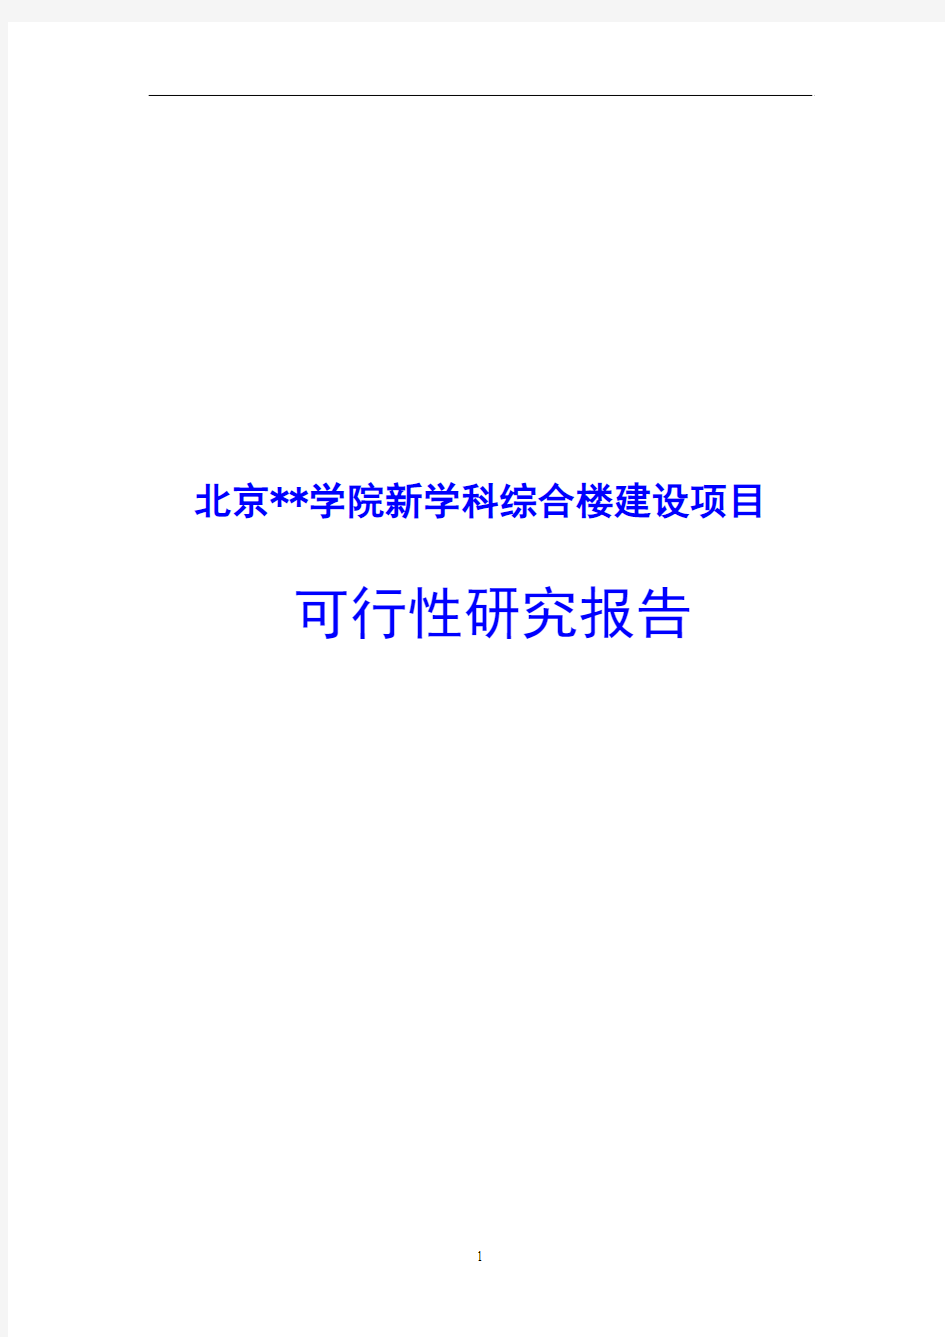 北京学院新学科综合楼建设项目可行性研究报告